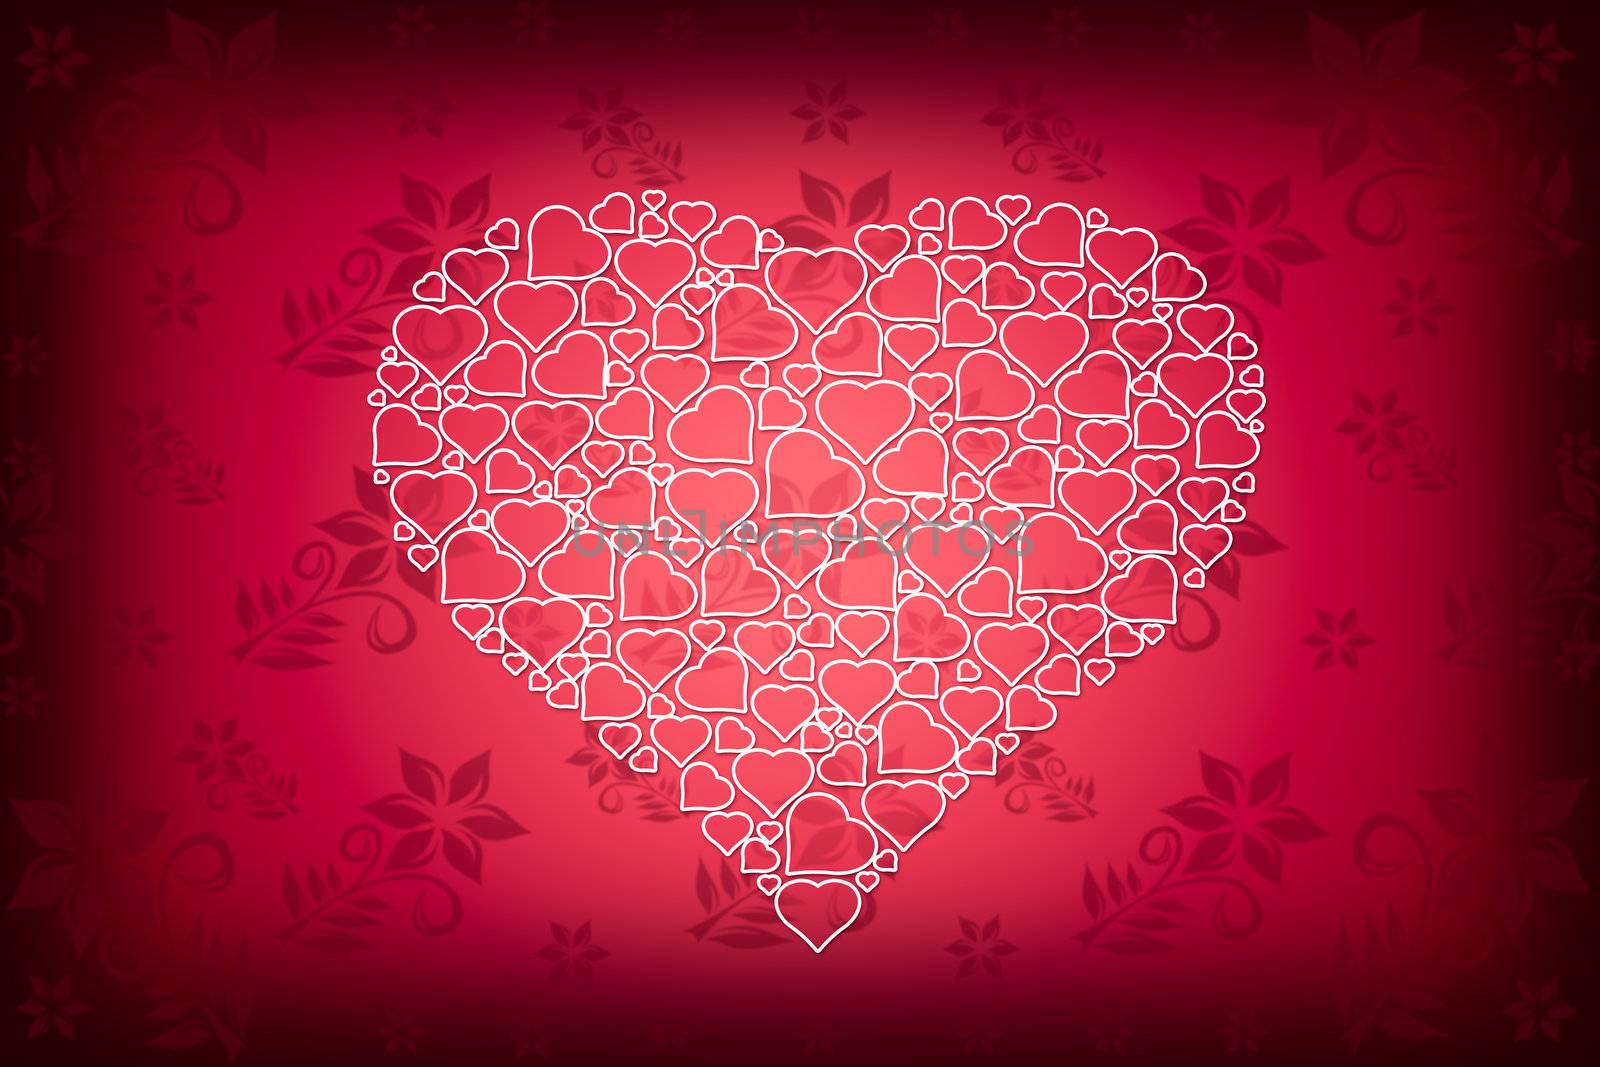 White Heart Design on Red Flower Background by scheriton